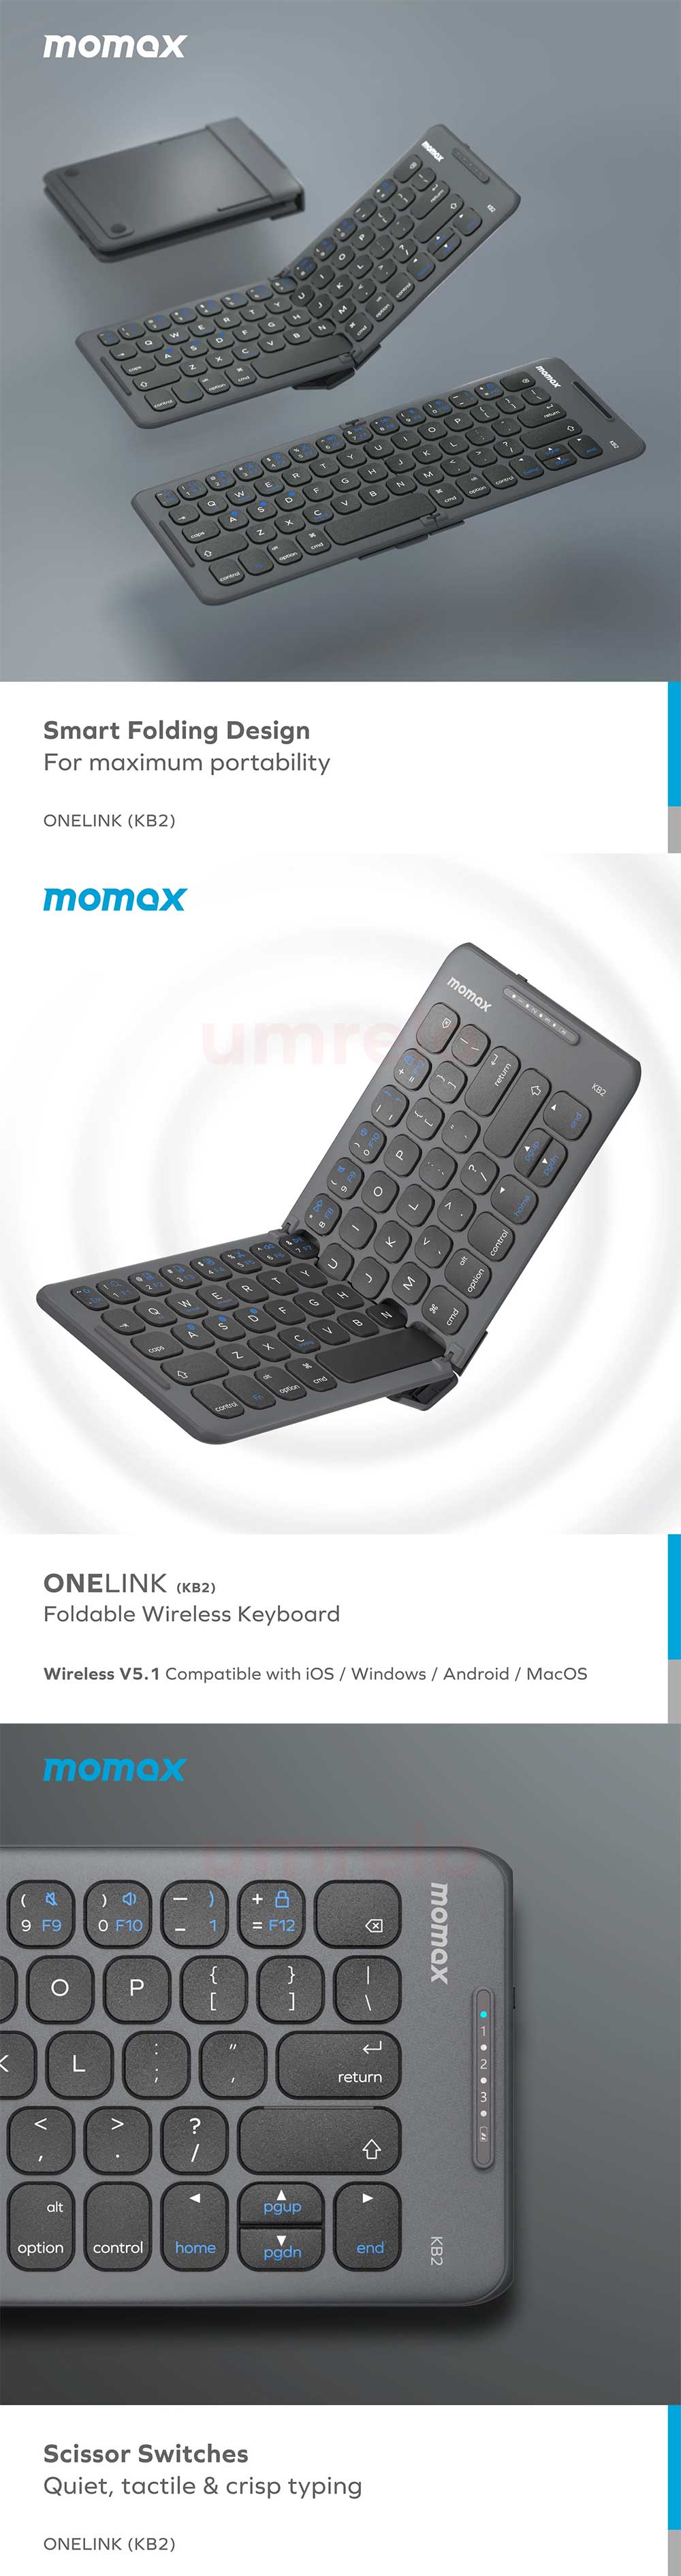 Momax ONELINK Folding Portable Wireless Keyboard KB2 3